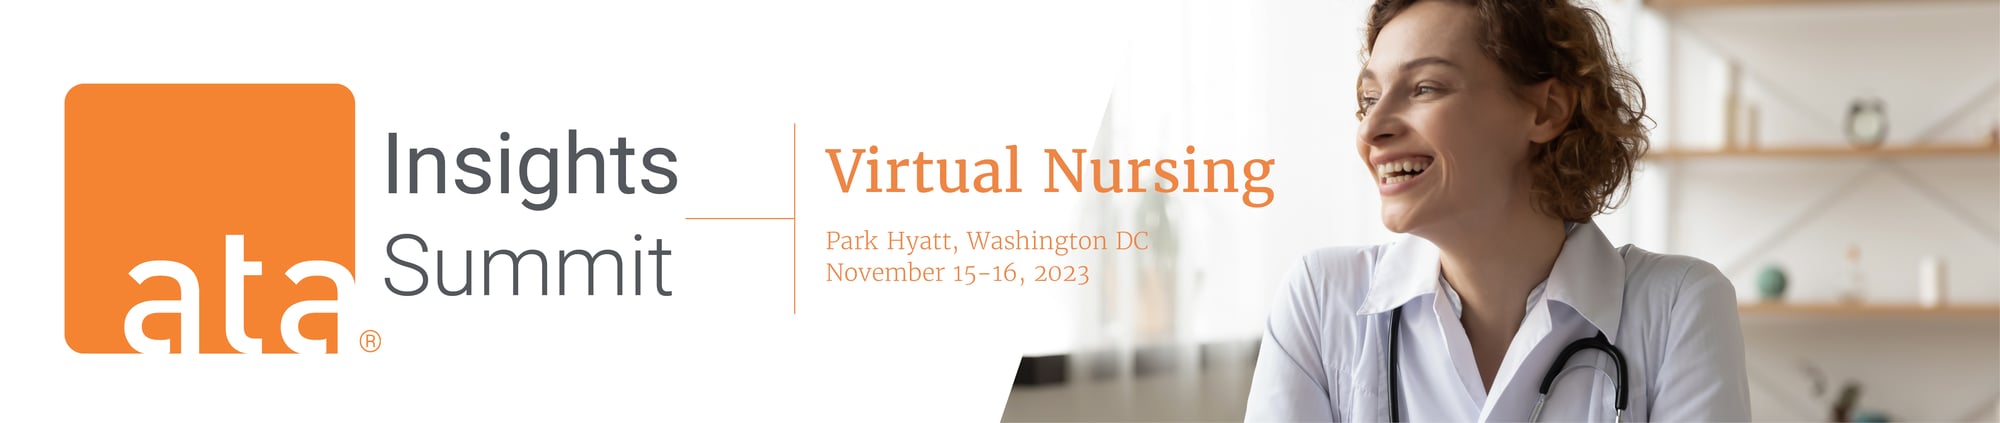 Virtual-Nursing-Logos-1180-250